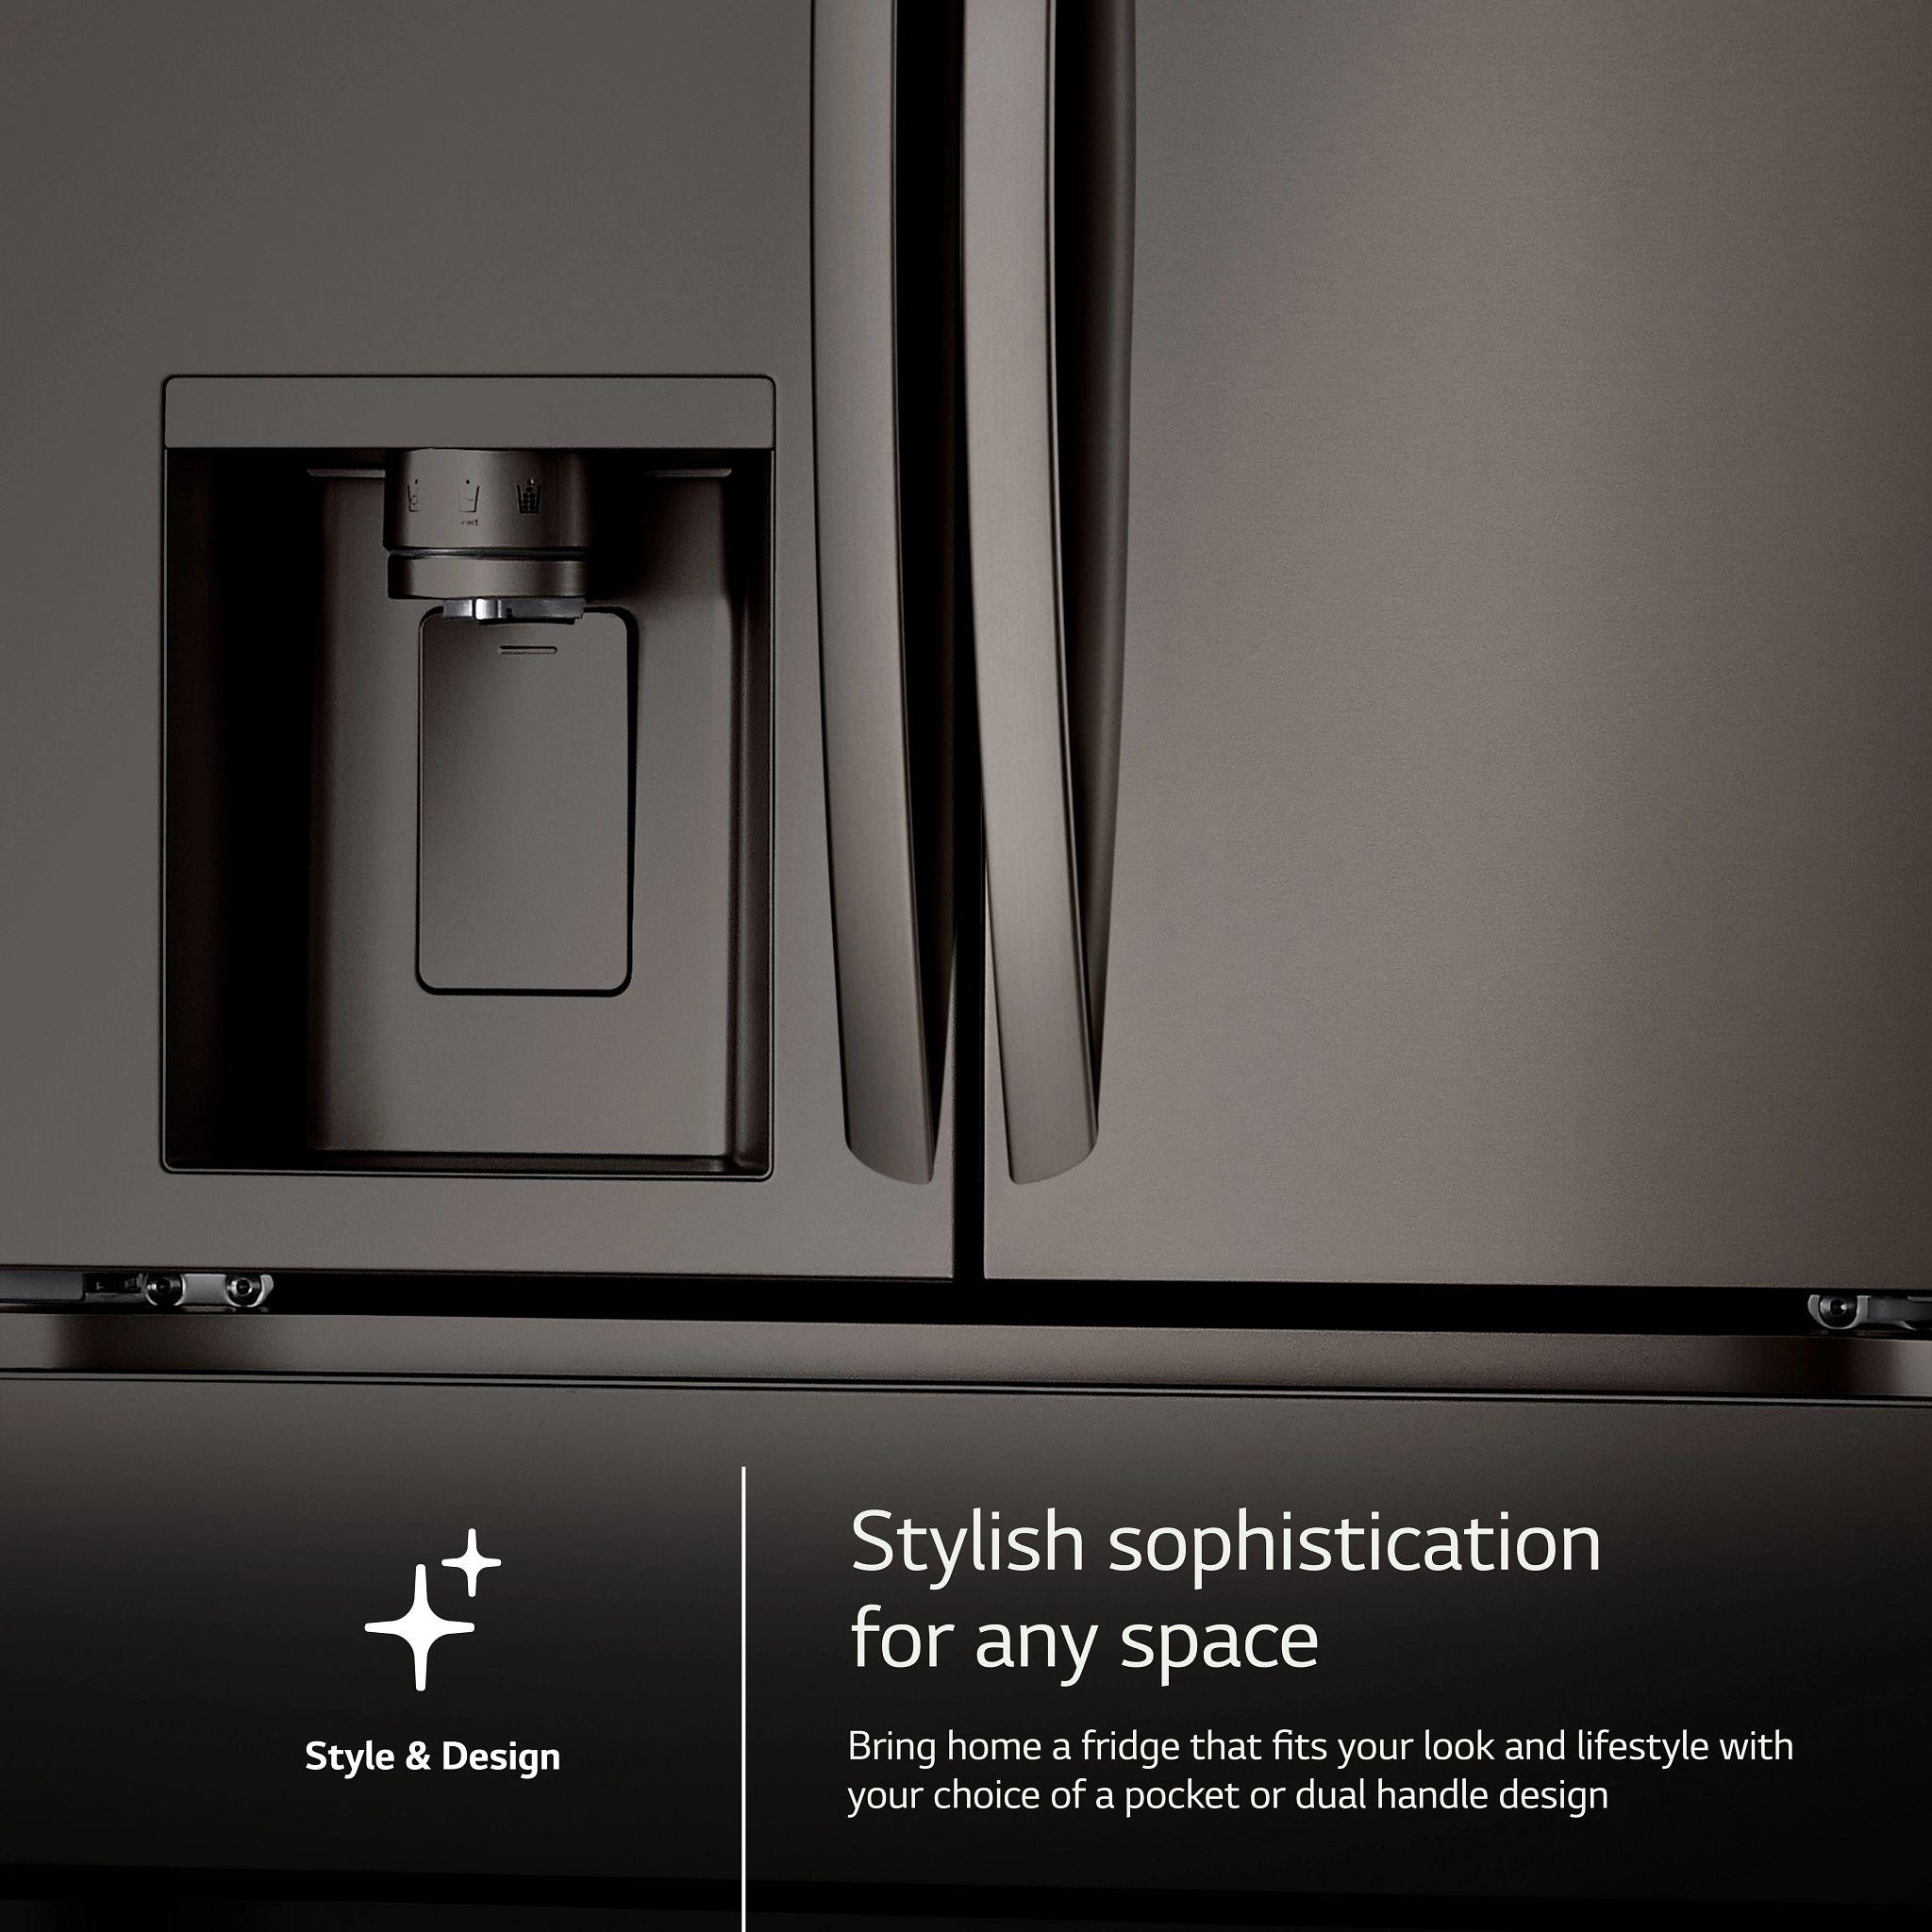 Lg LF29H8330D 29 Cu. Ft. Smart Standard-Depth Max™ 4-Door French Door Refrigerator With Full-Convert Drawer™